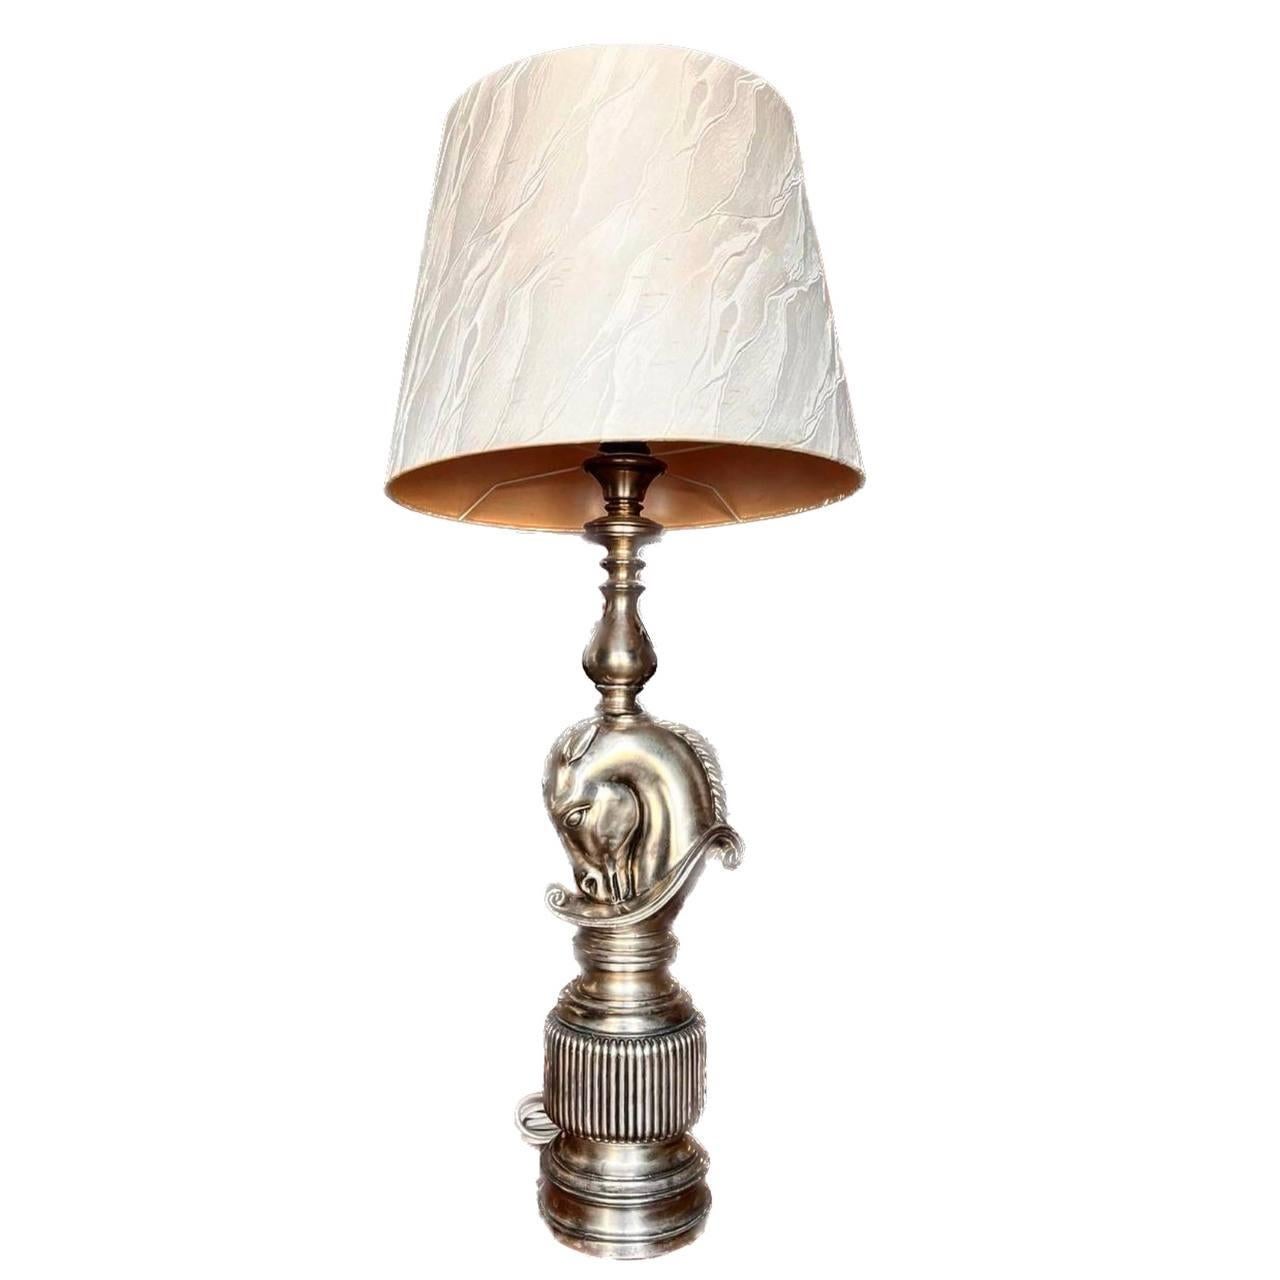 Grande lampe de table en laiton avec abat-jour, France, années 1970.

Cette élégante lampe en forme de pièce d'échecs Eleg

La lampe de table Diptych Fine Arts est une œuvre d'art de la plus haute qualité. 

Lampe décorative en plus de